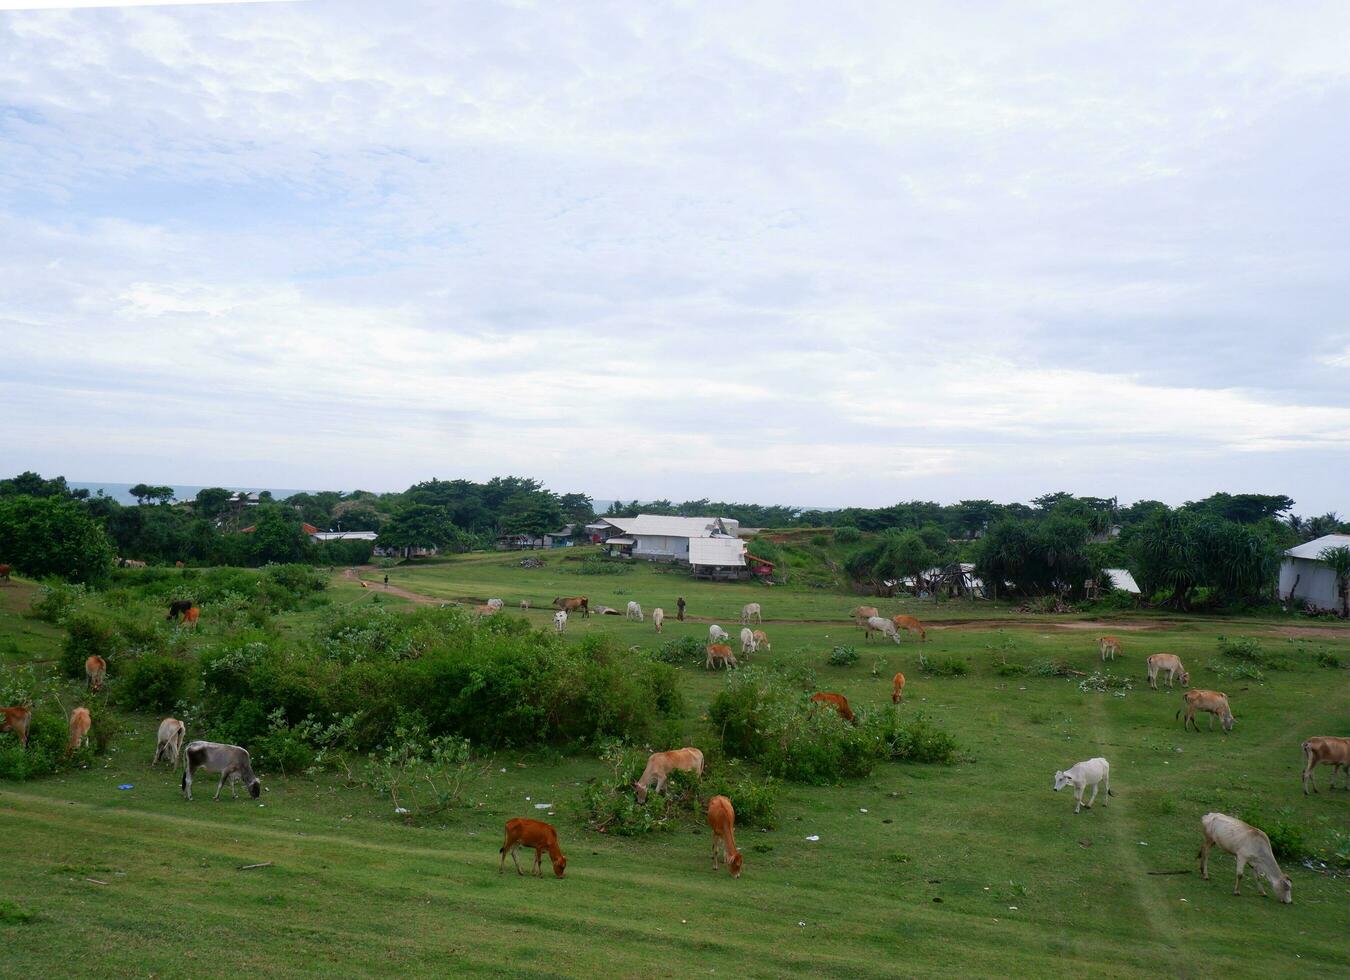 een groep van koeien aan het eten Aan de groen weiland , groen landschap, groen velden, grazen koeien foto